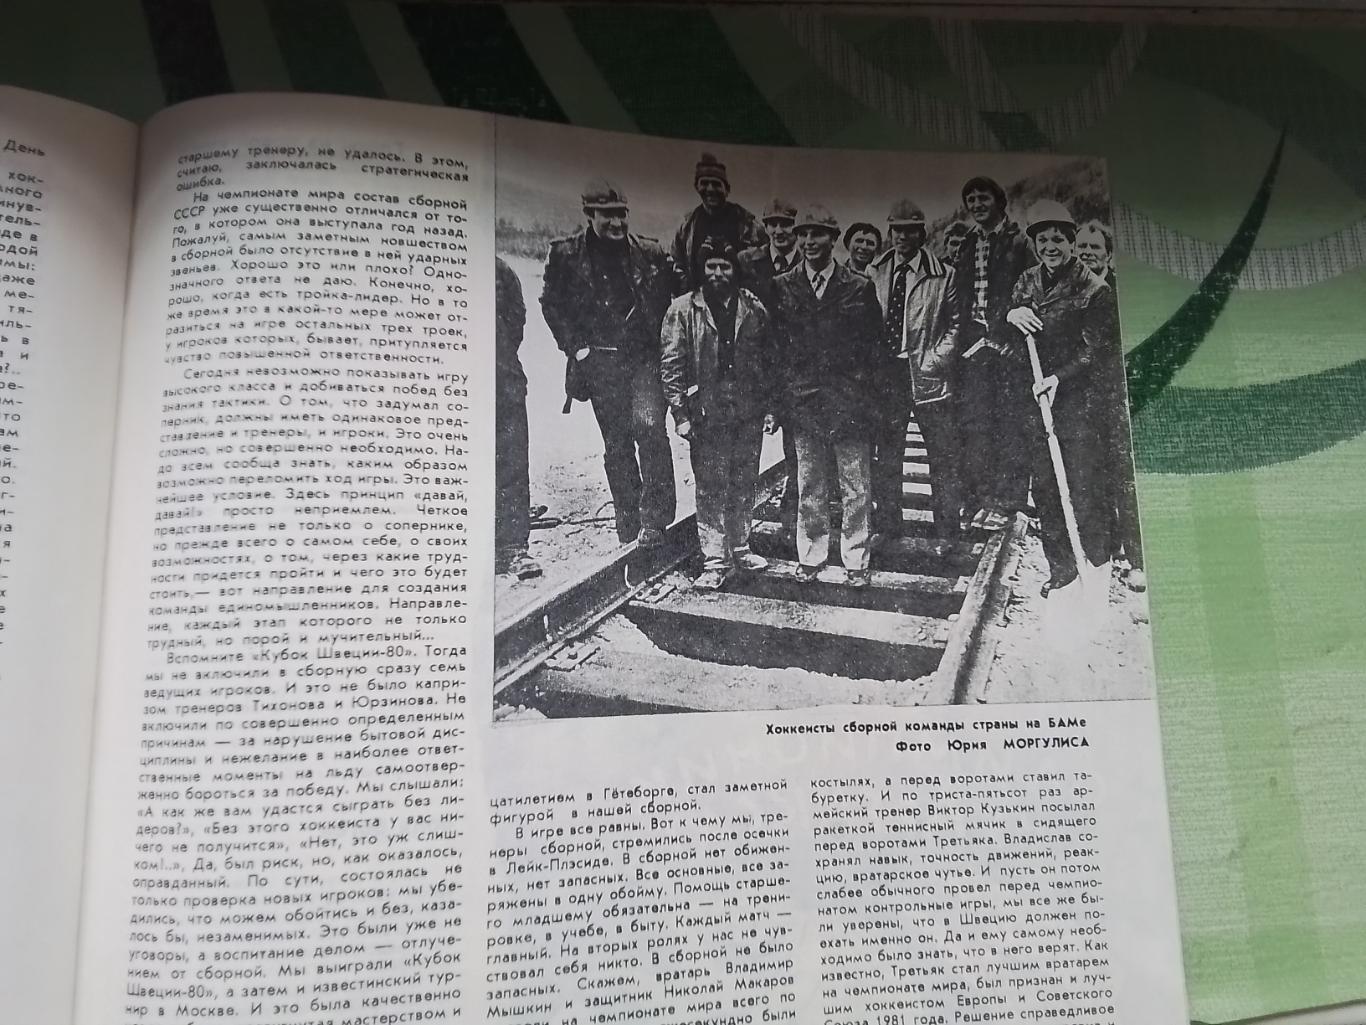 Журнал ФиС 1981 N 8 В.Тихонов о хоккее Д Тбилиси в ЕК 1970 Оганесян А.Заваров 5